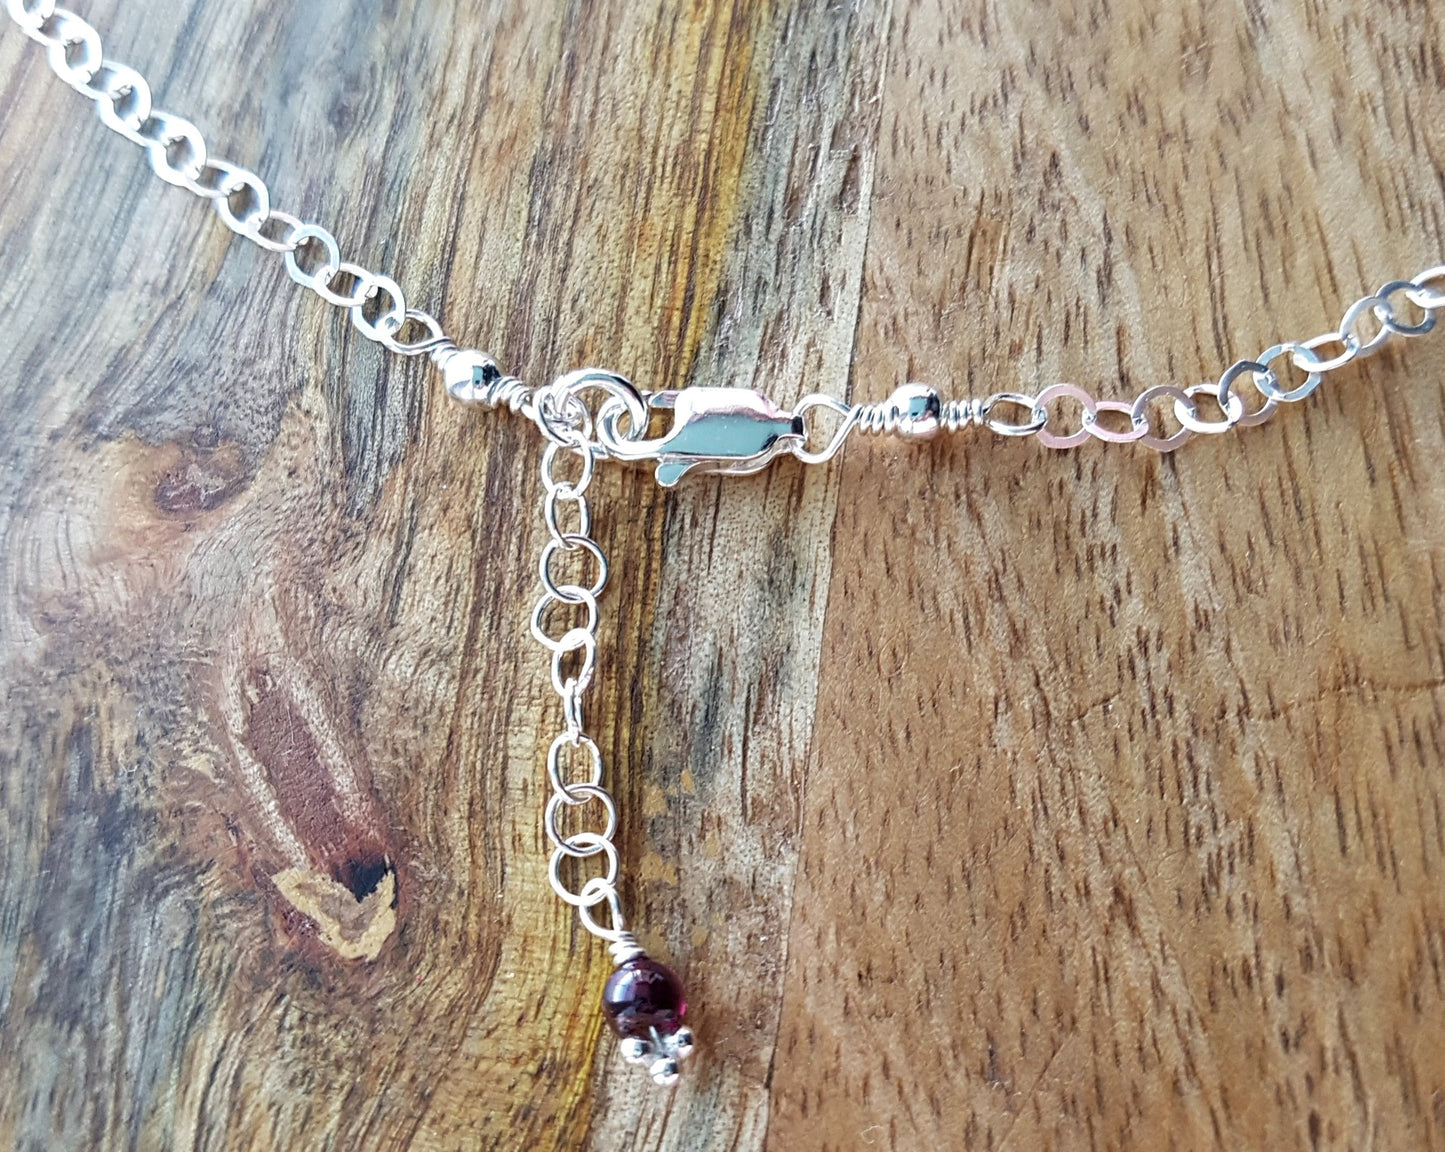 Garnet Passion Necklace, Handmade Sterling Silver Genuine Garnet Bib or Fringe Style Necklace, Dark Red Gemstone, Pinkish Garnet 